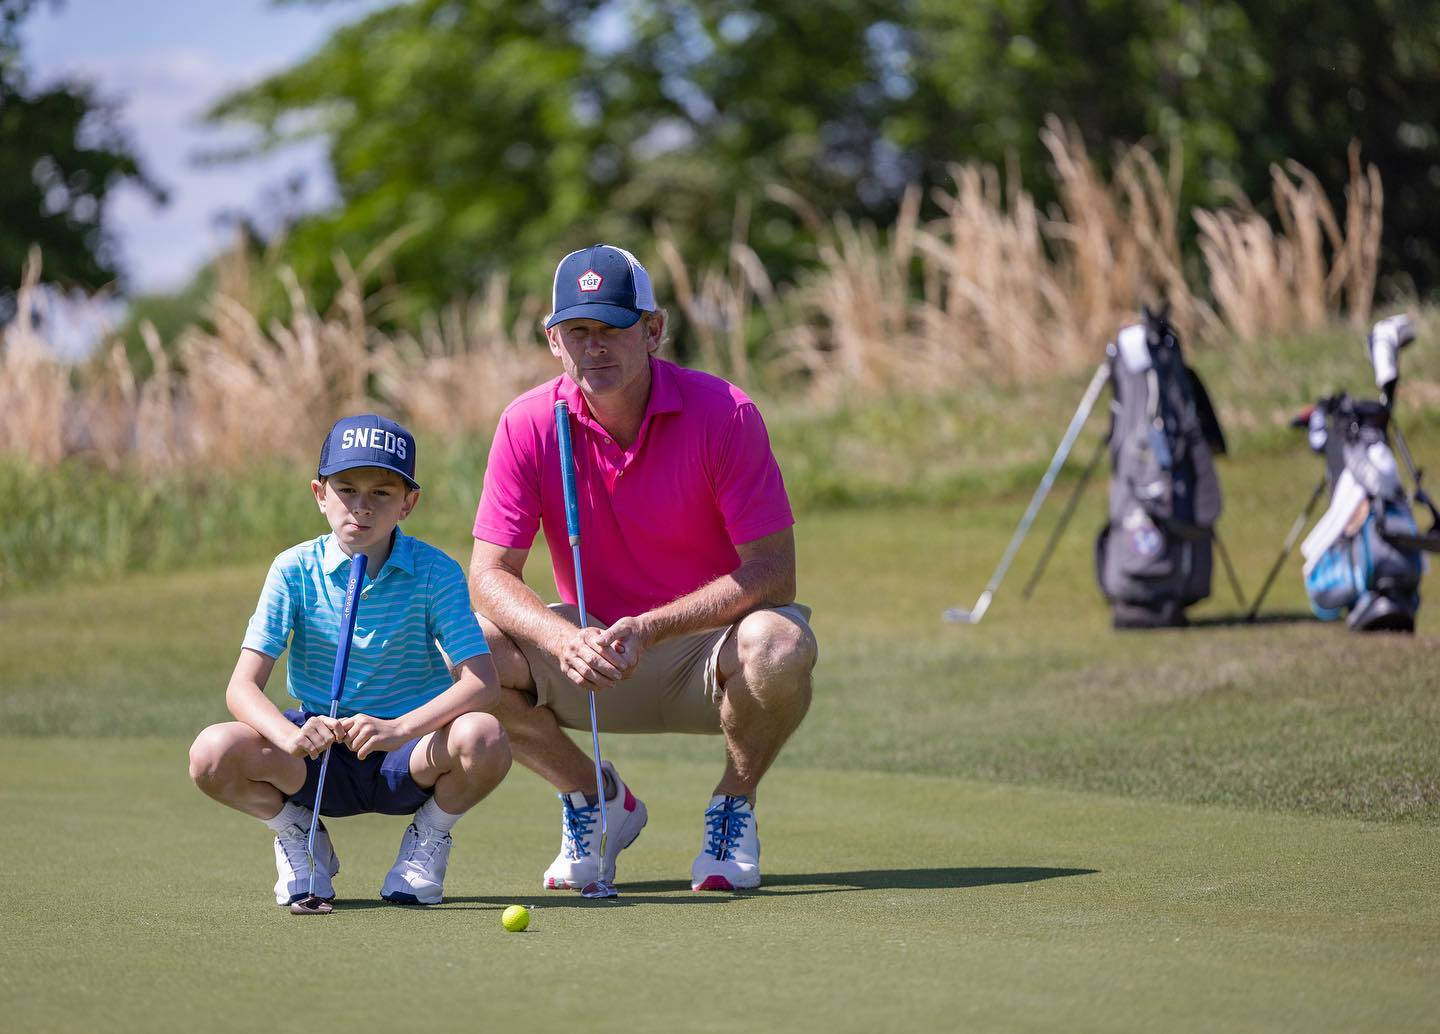 Brandtsnedeker E Suo Figlio Che Giocano A Golf Sfondo